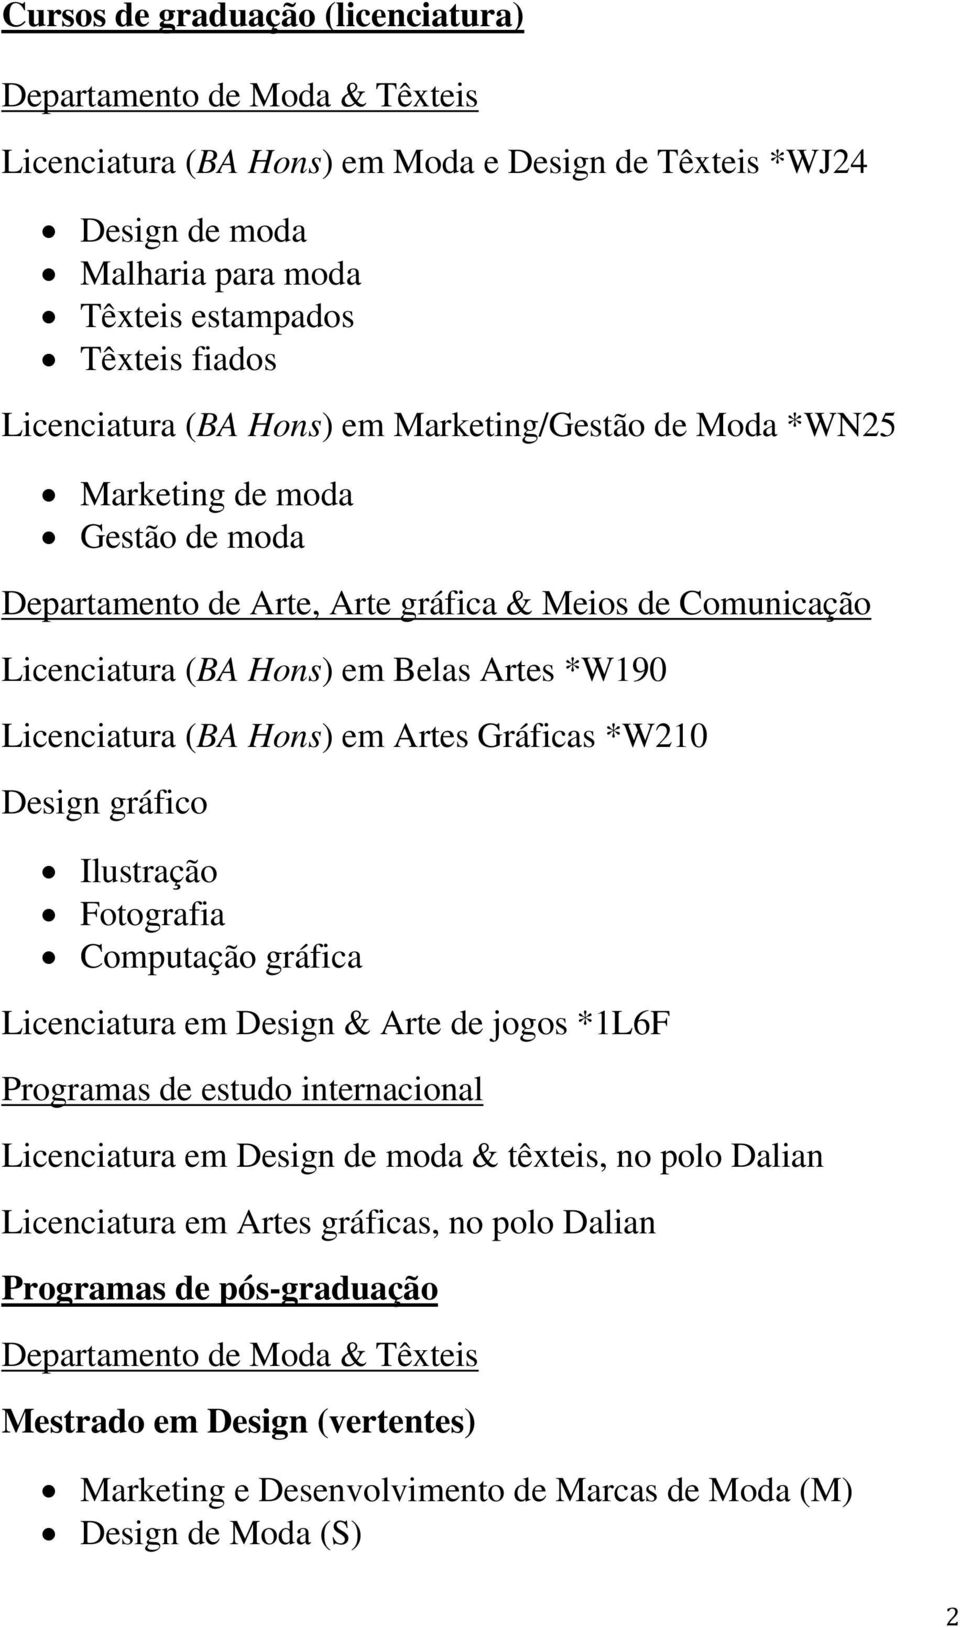 Licenciatura (BA Hons) em Artes Gráficas *W210 Design gráfico Ilustração Fotografia Computação gráfica Licenciatura em Design & Arte de jogos *1L6F Programas de estudo internacional Licenciatura em